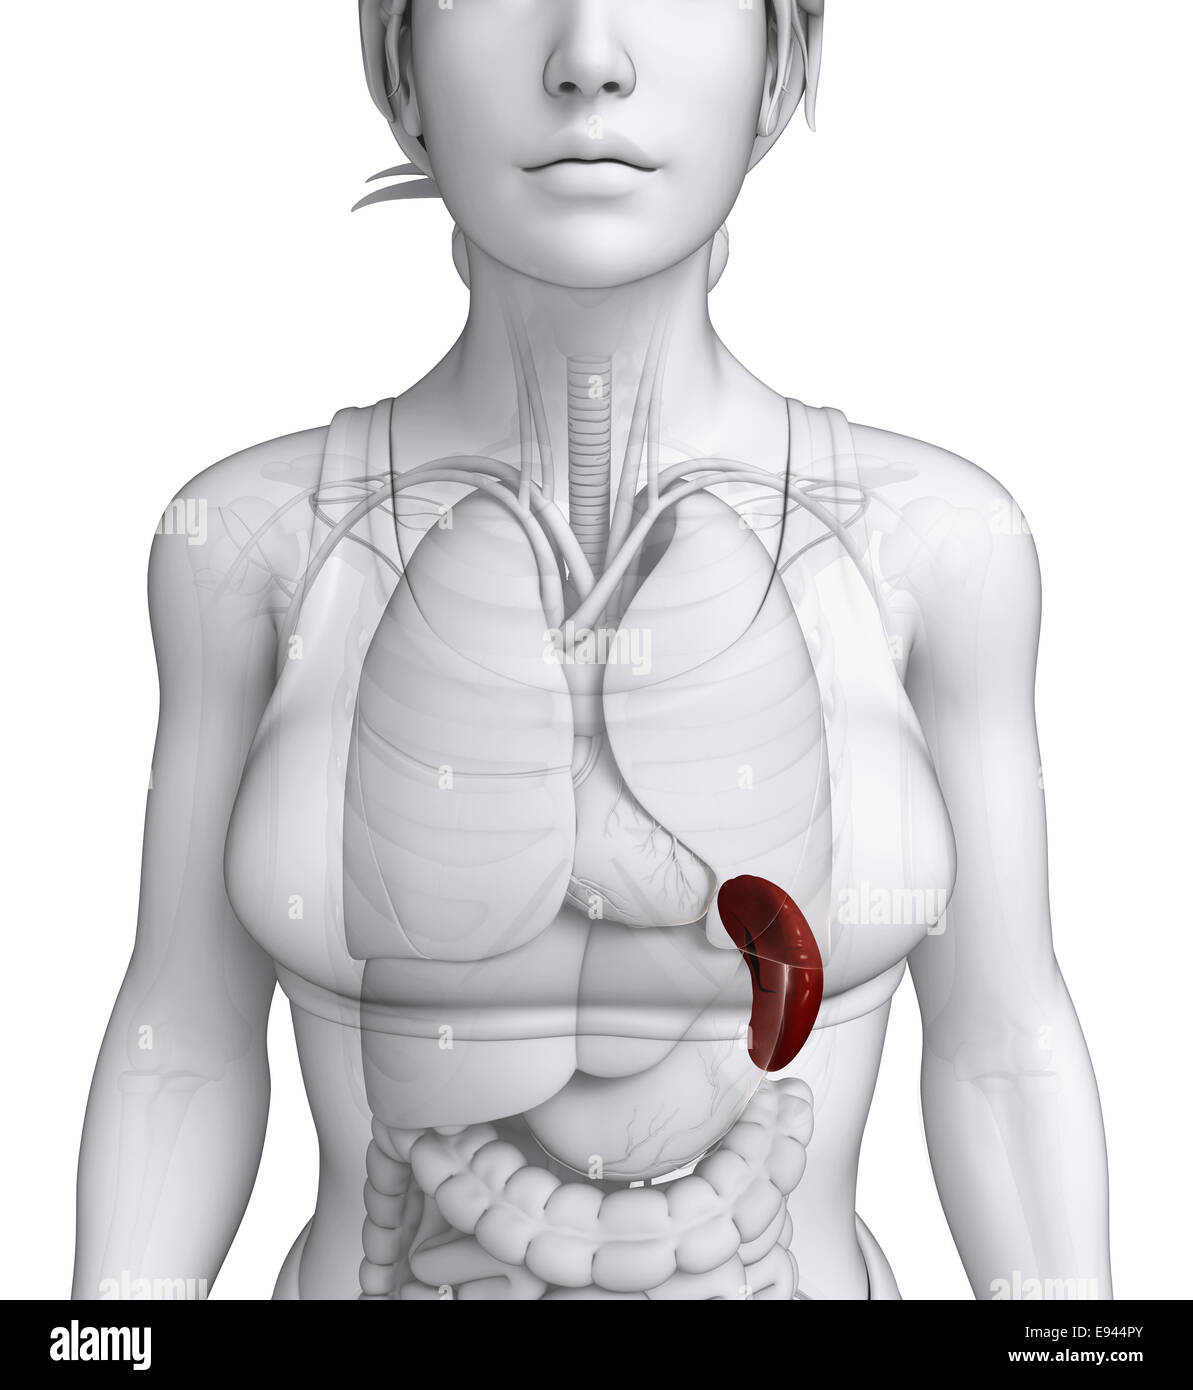 Селезенка у женщин. Селезенка анатомия женщины. Сток анатомия женское сердце. Размер здоровой селезенки у женщины. Размеры селезенки у женщин.